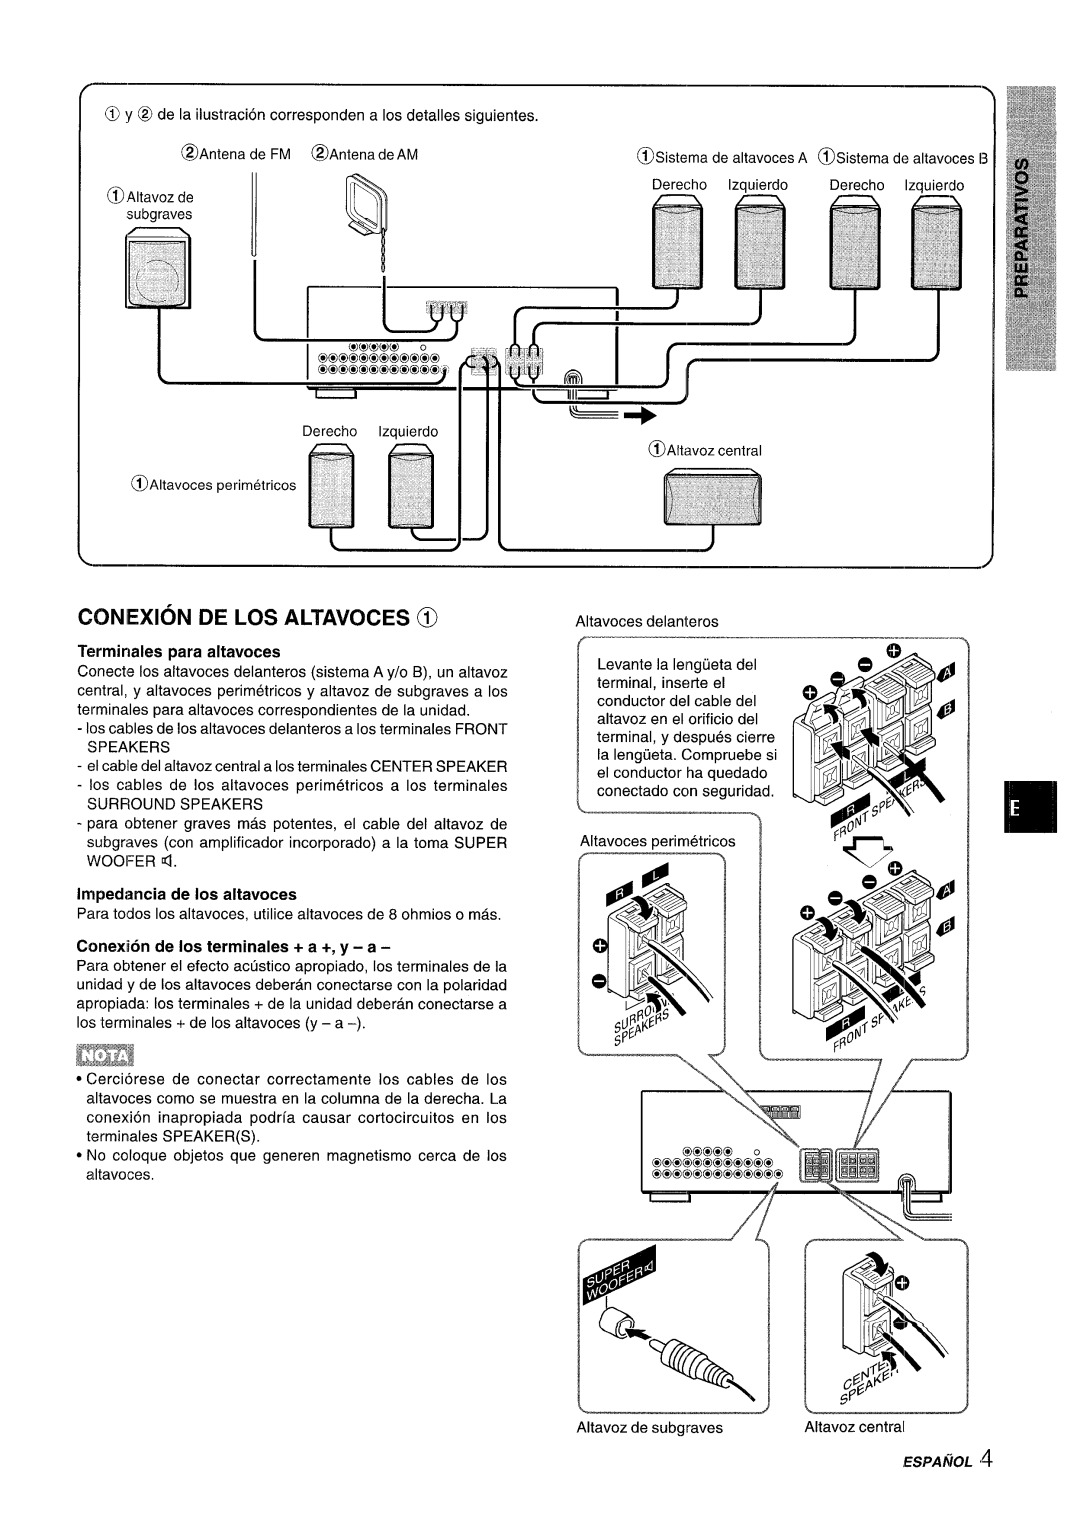 Aiwa AV-D35 manual Coniexion De Los Altavoces @, Terminates para altavoces, Impedtmcia de Ios altavoces 